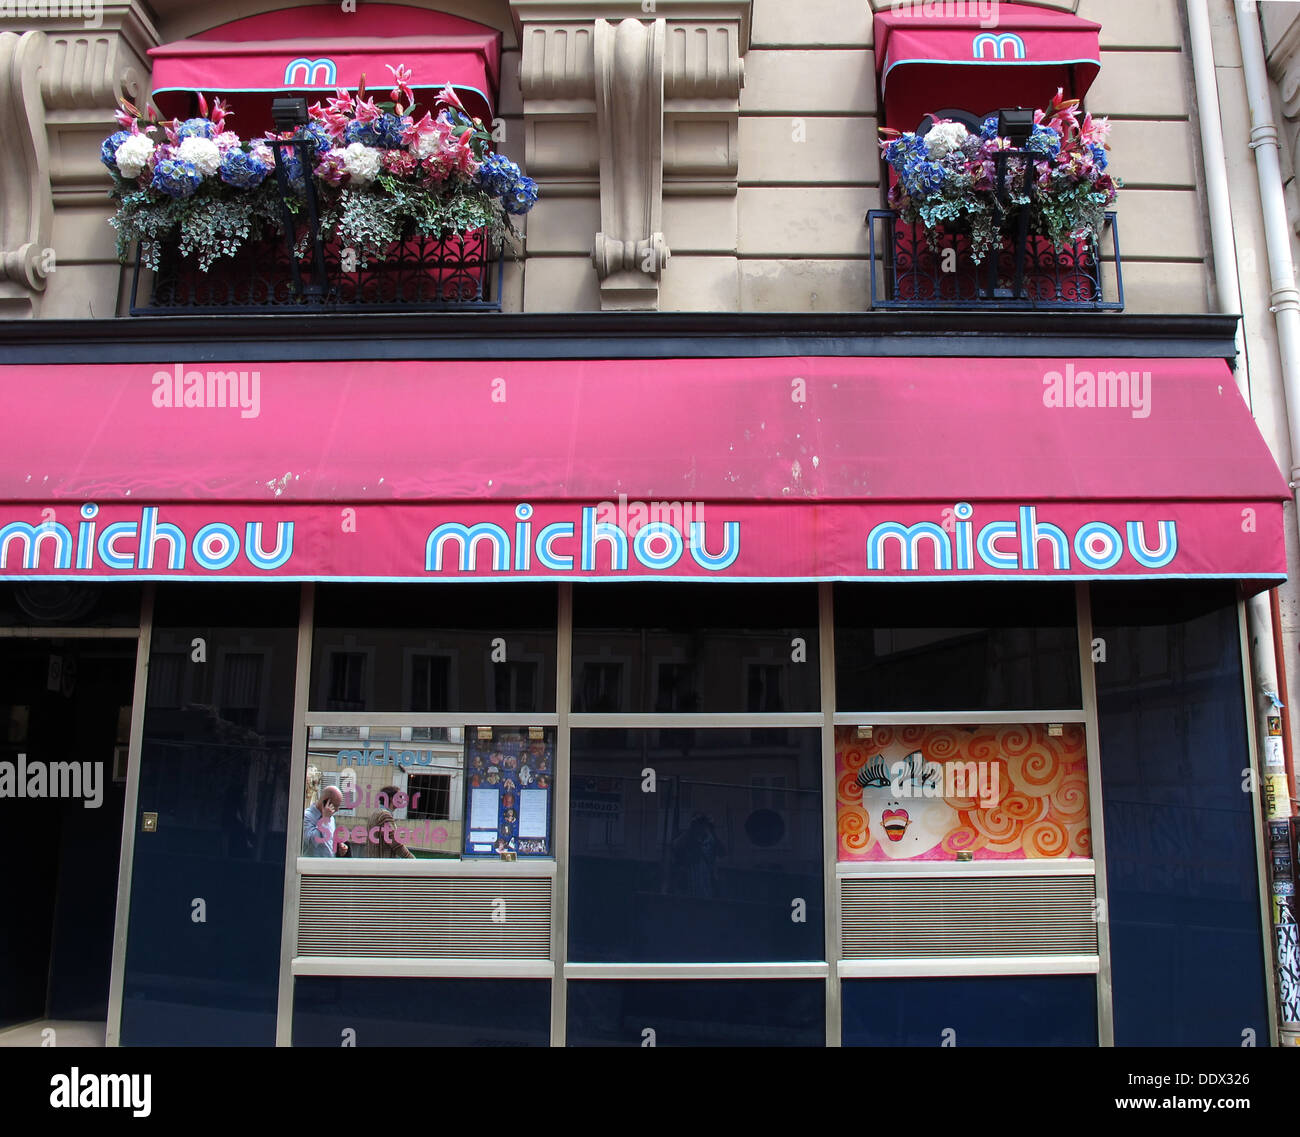 Michou cabaret, rue des Martyrs, Butte Montmartre hill, Paris, France Stock Photo